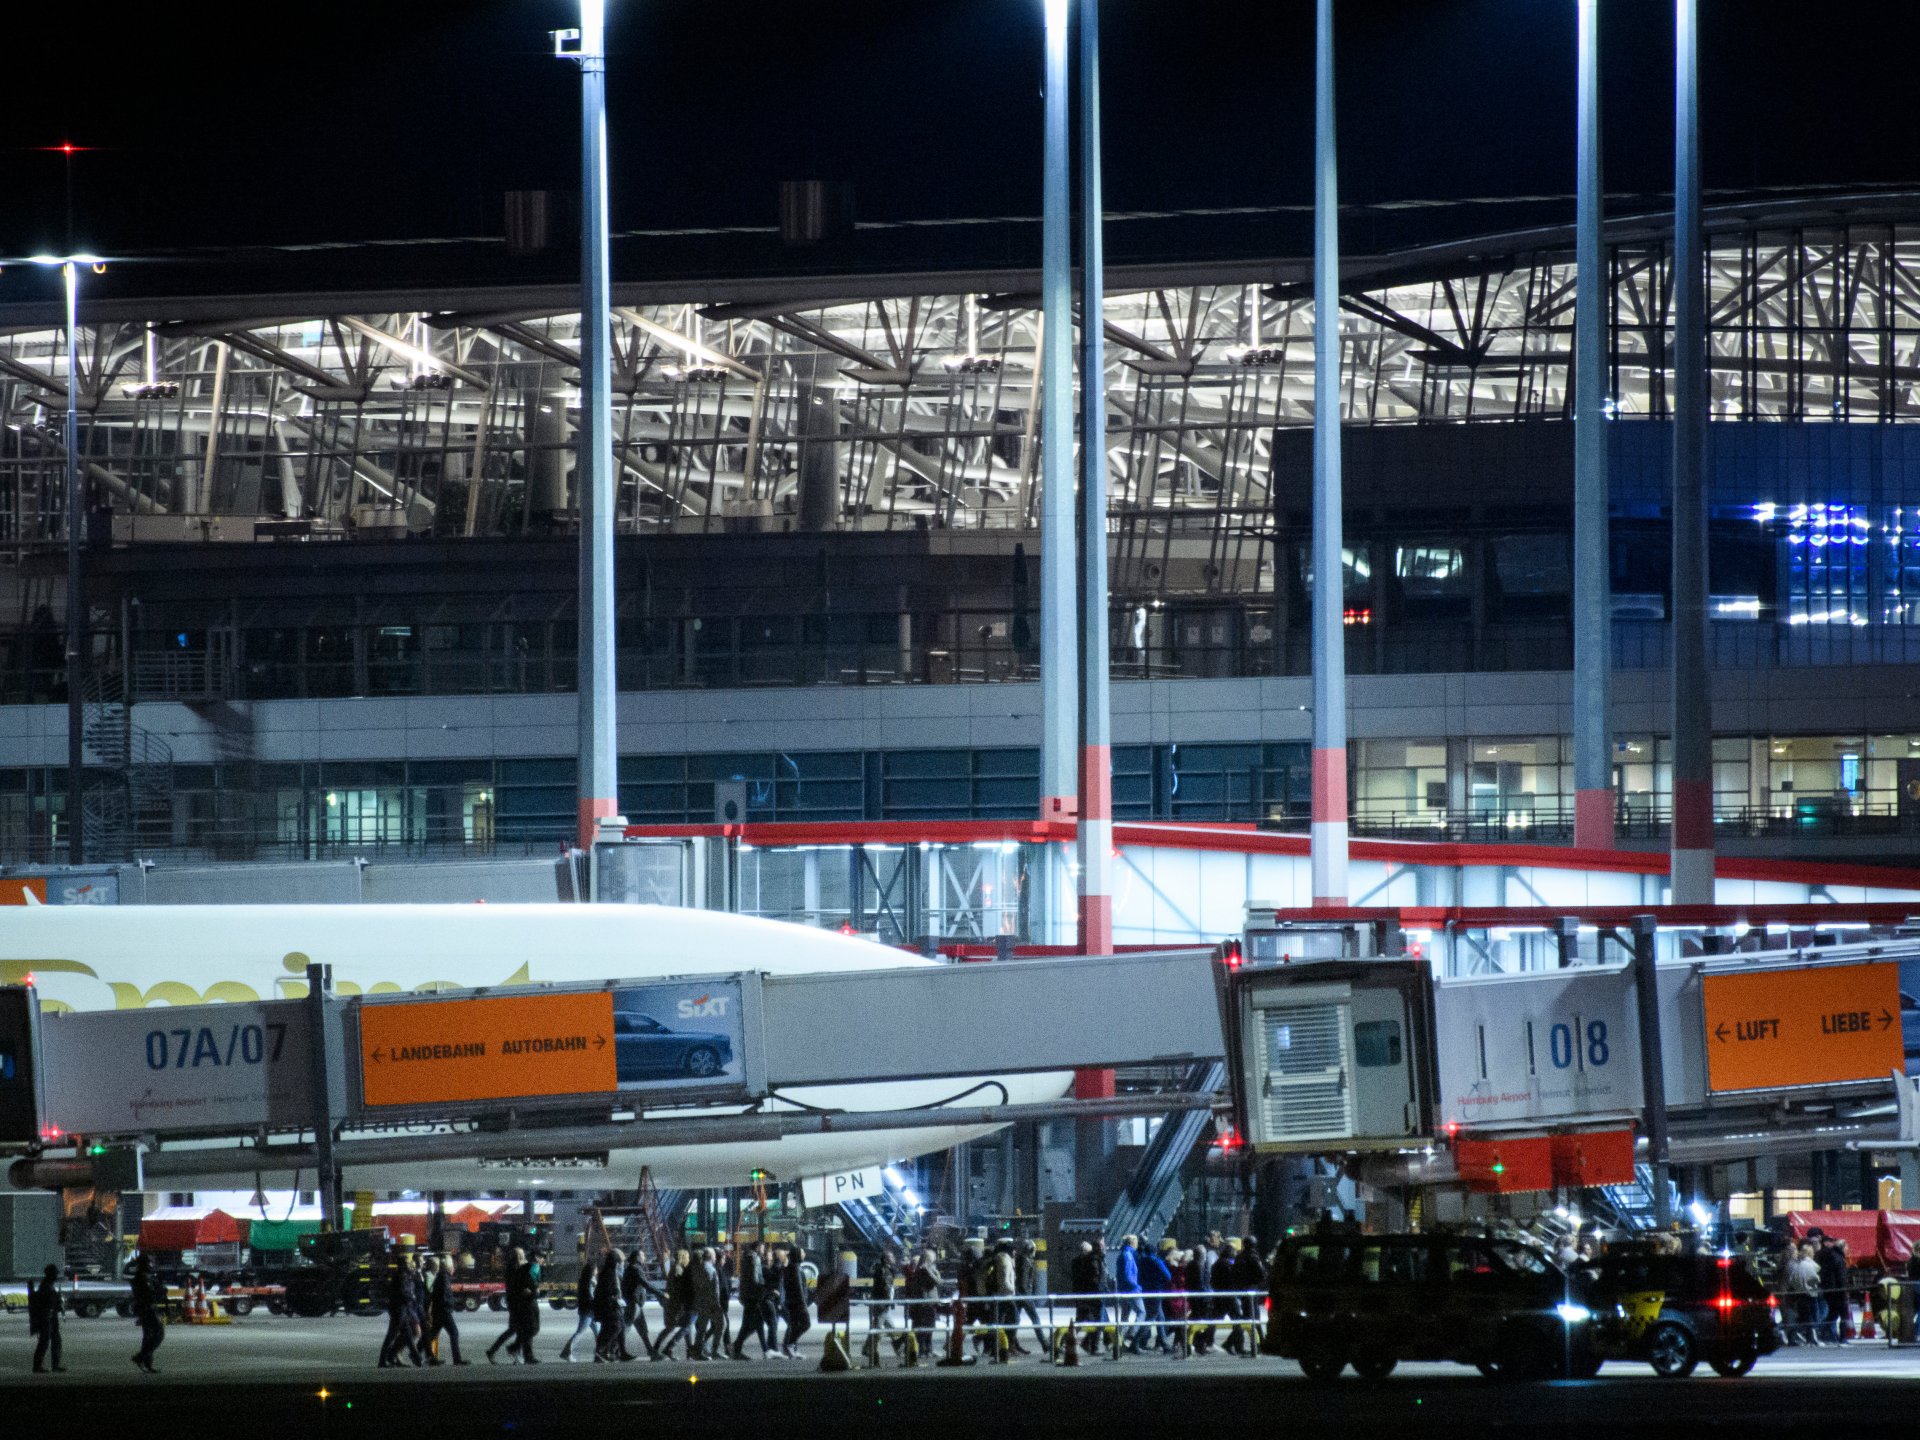 مسلح يقتحم مطار هامبورغ بسيارته ويعطل حركة الملاحة الجوية | أخبار – البوكس نيوز